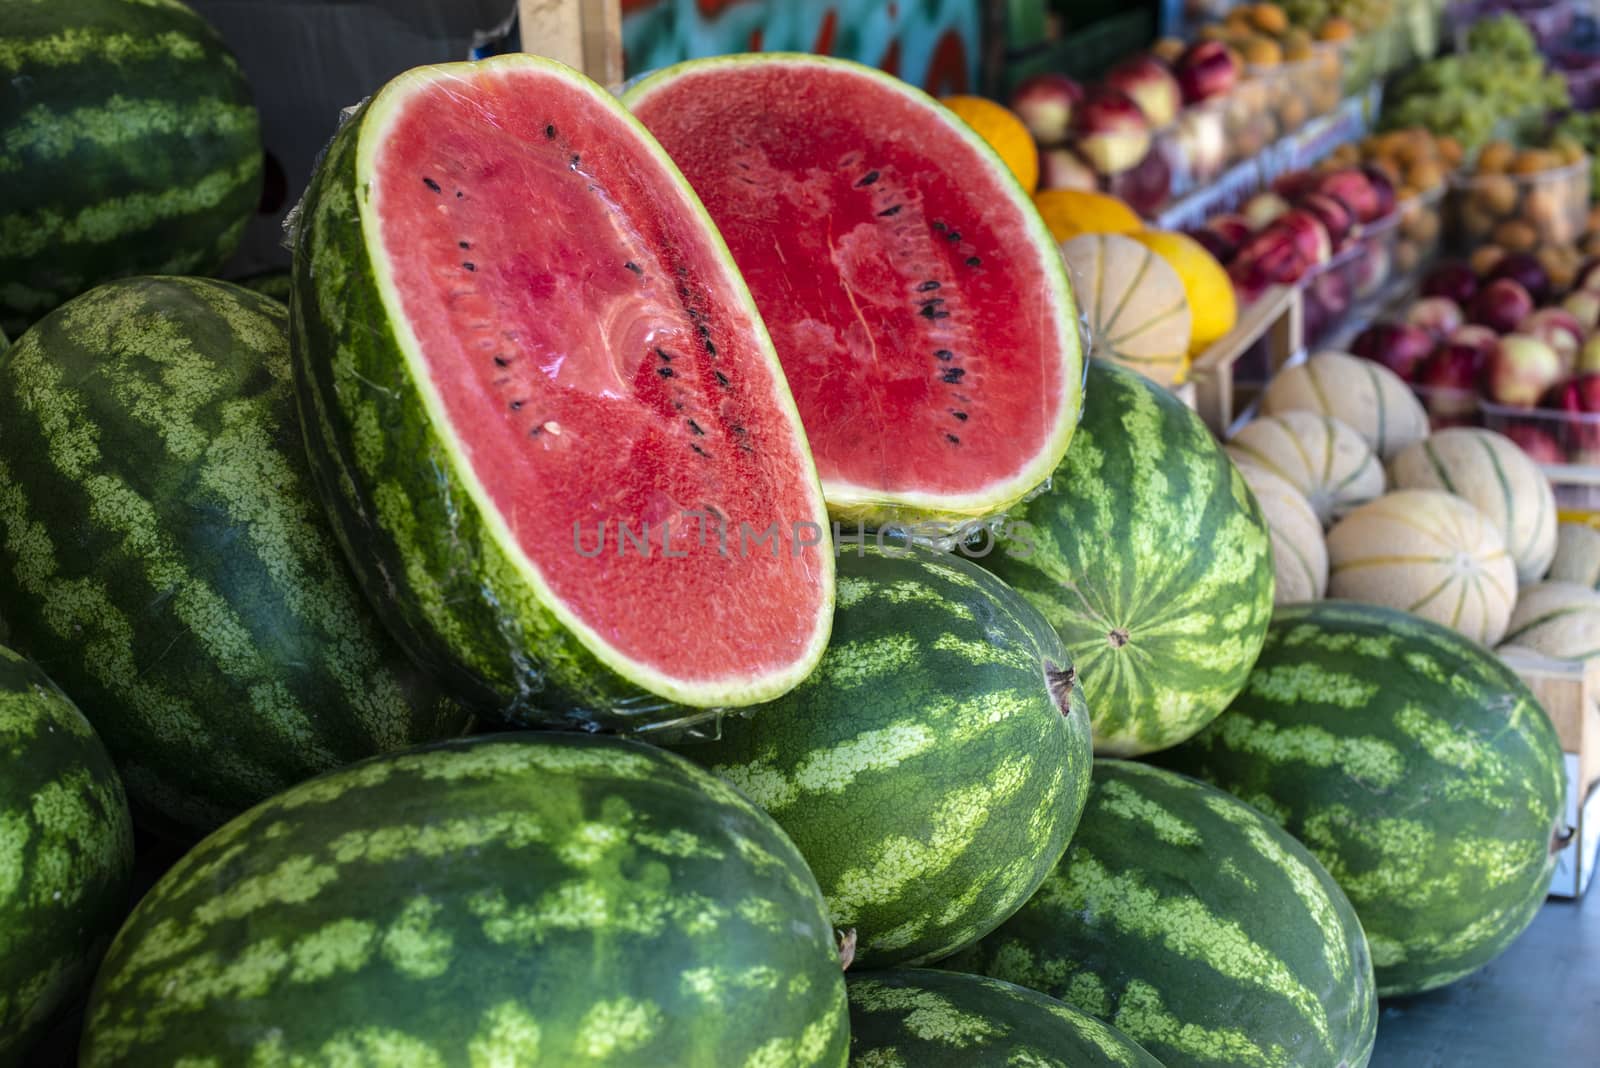 Watermelons on shelf. Cutted watermelon on street market by deyan_georgiev